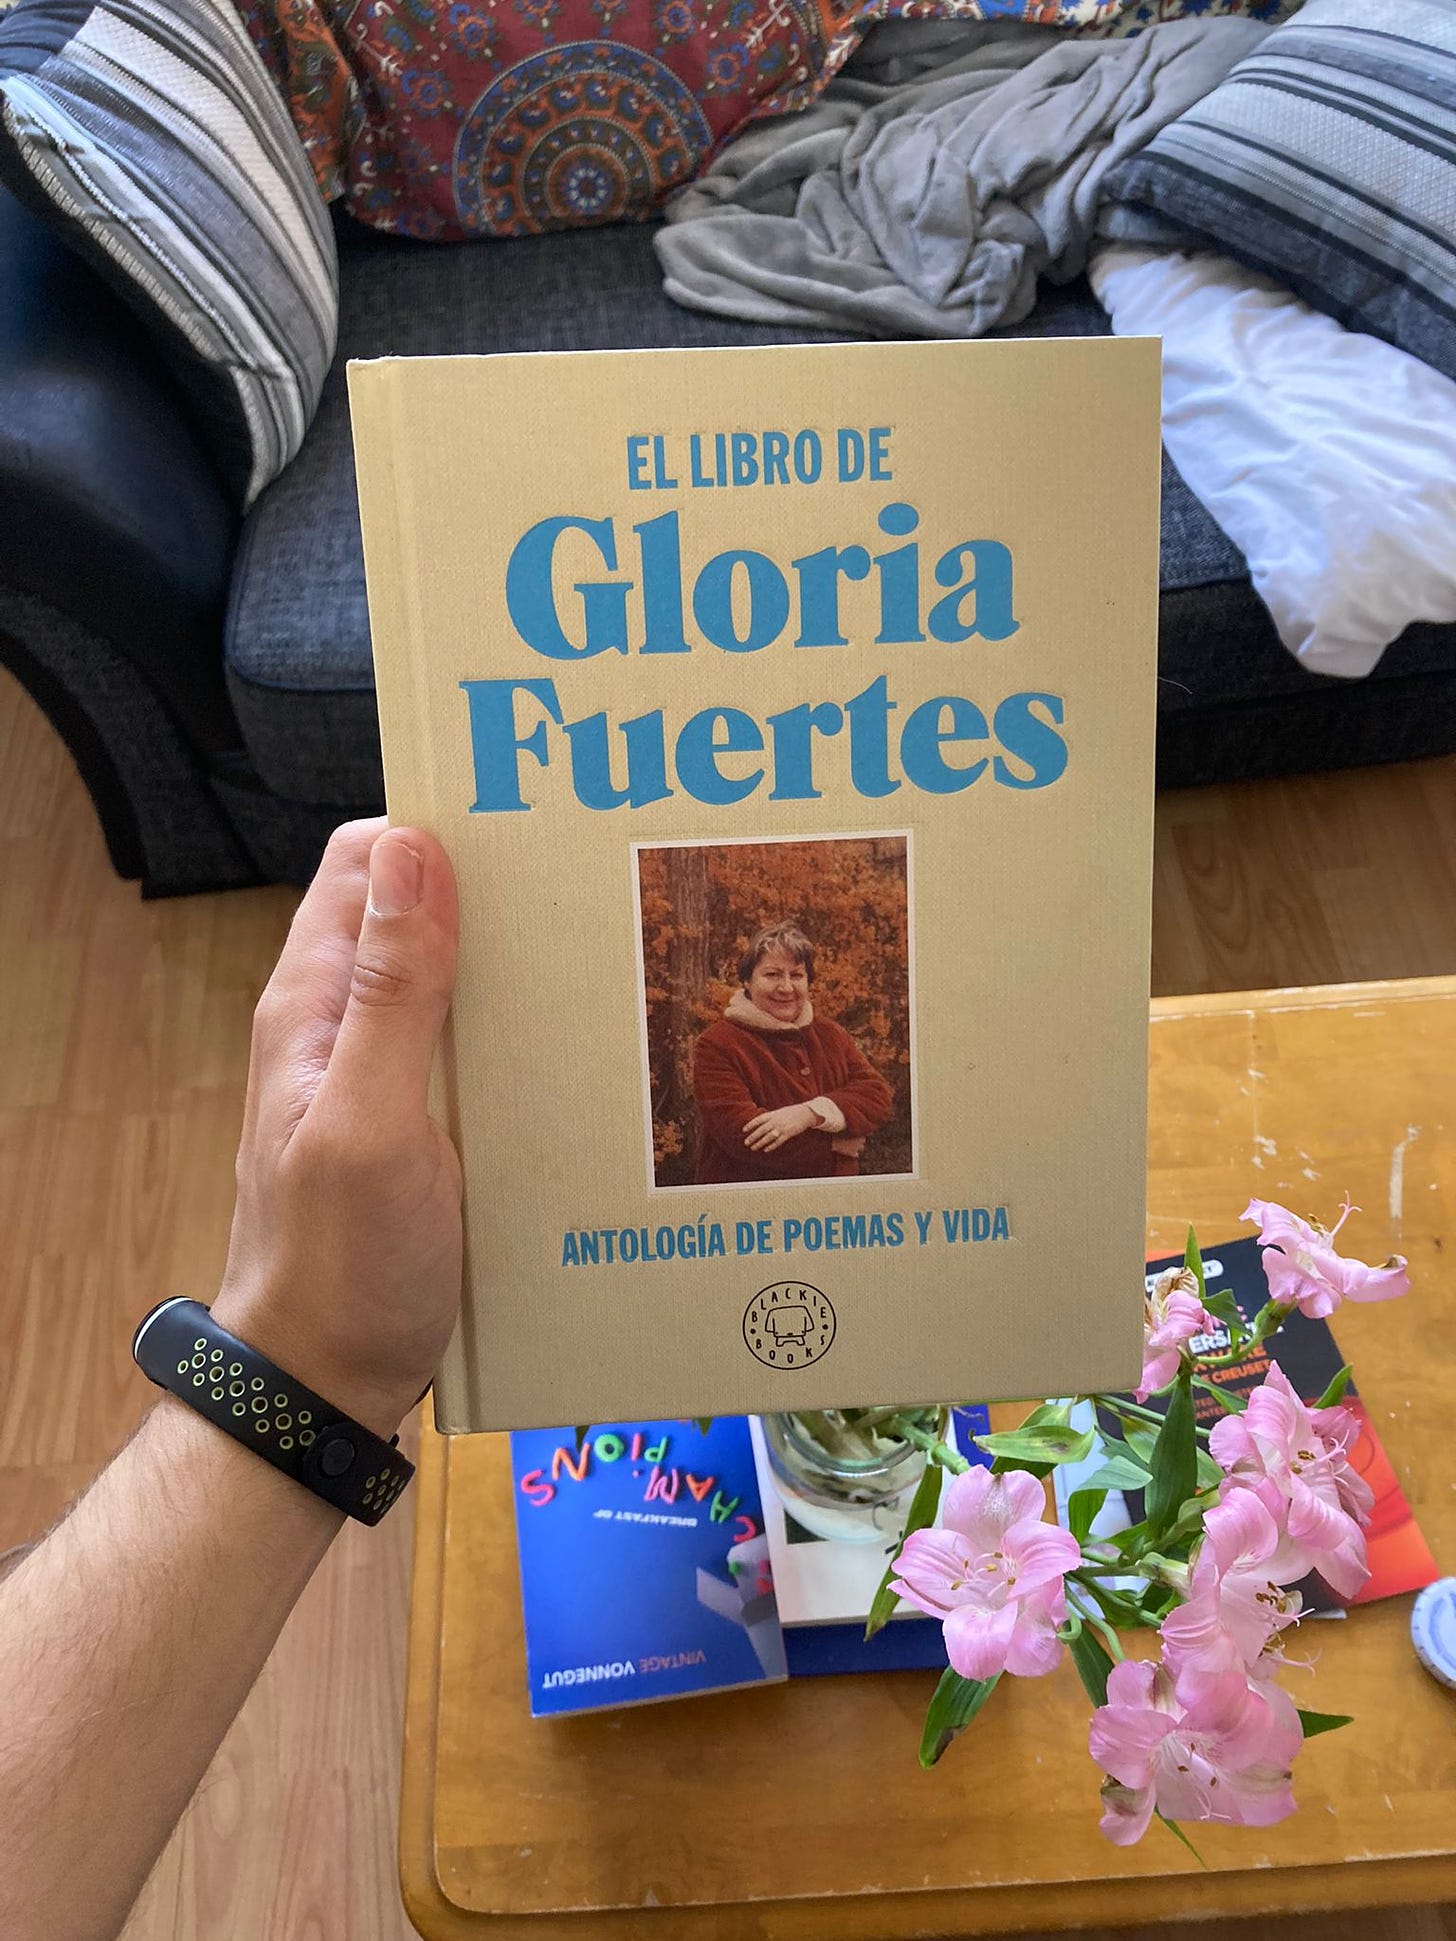 Portada del libro "el libro de Gloria Fuertes"